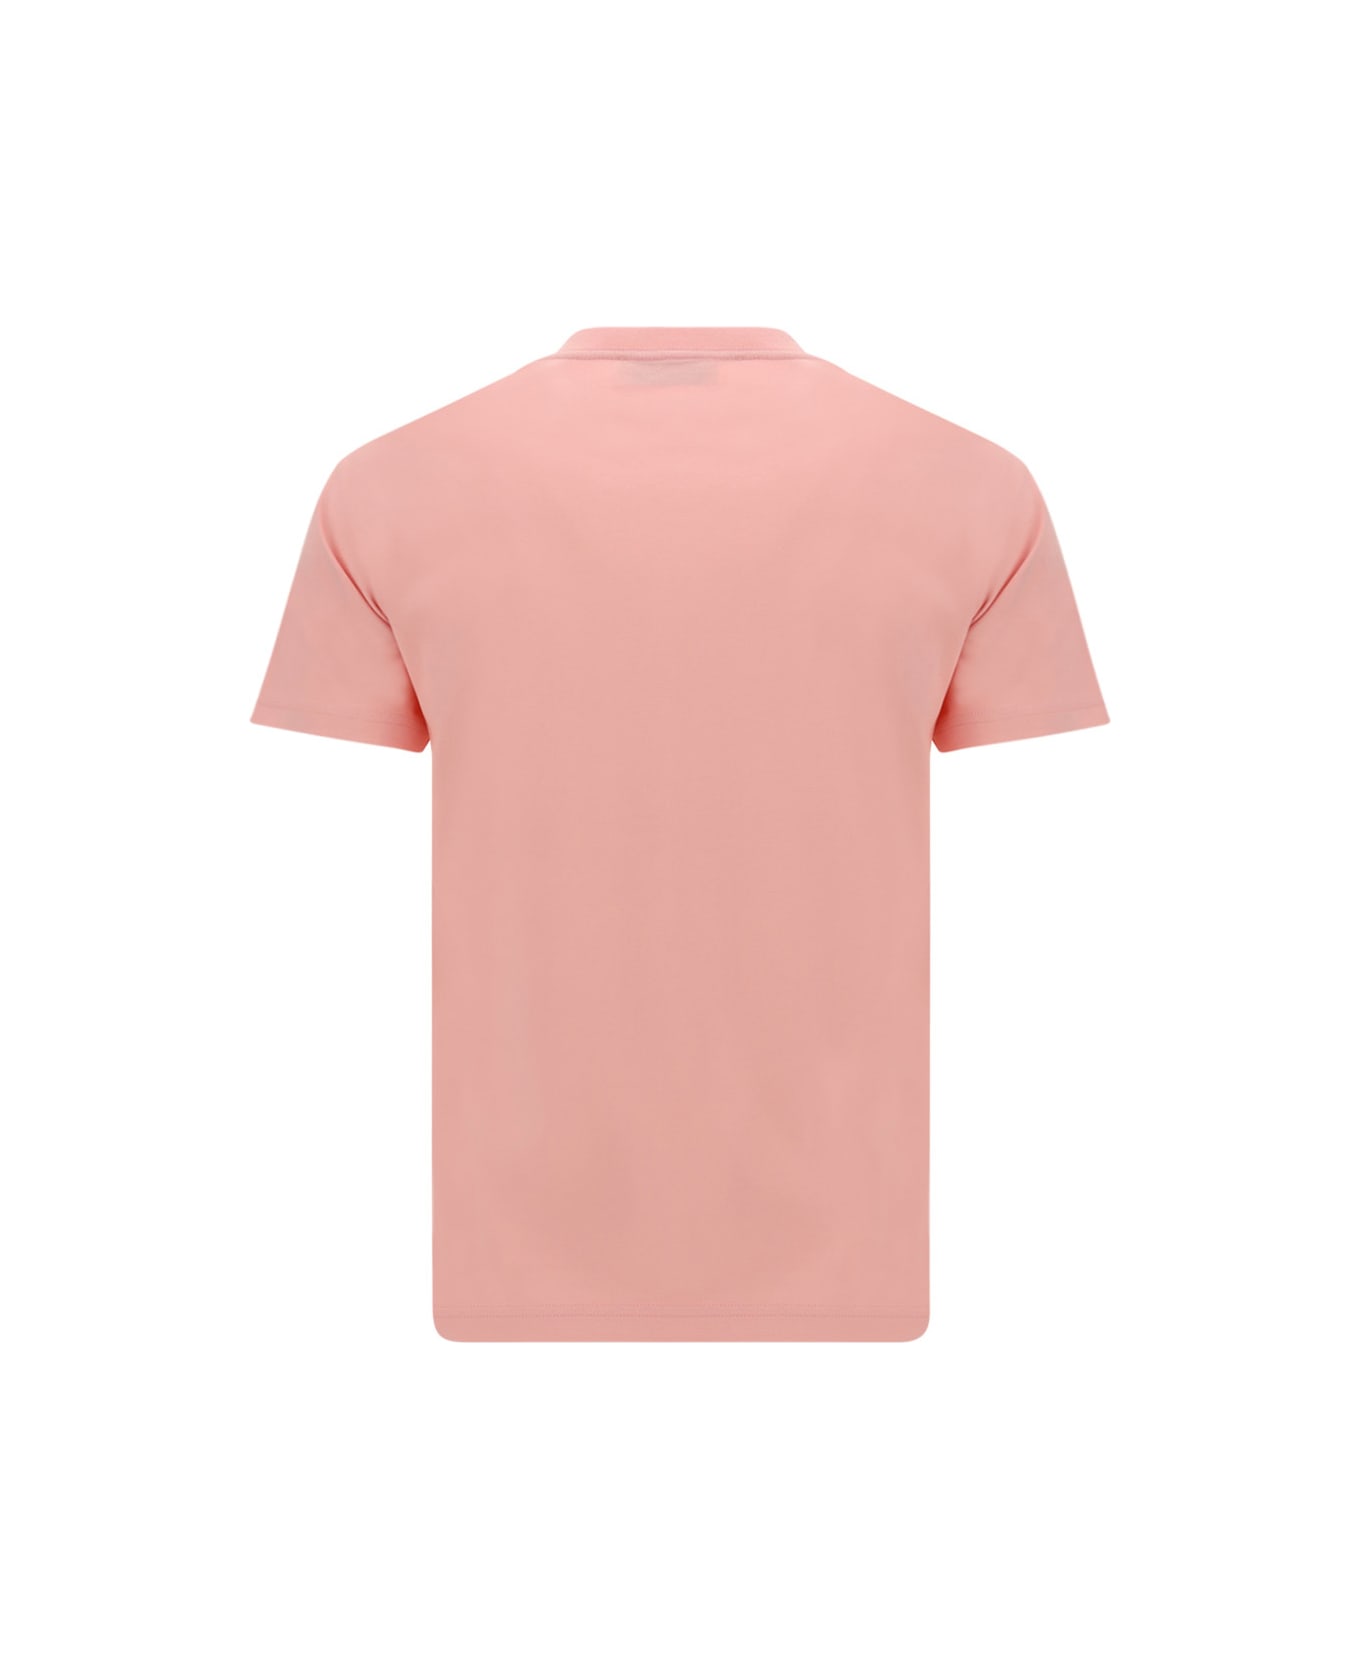 Lanvin Curb T-shirt - Rosa